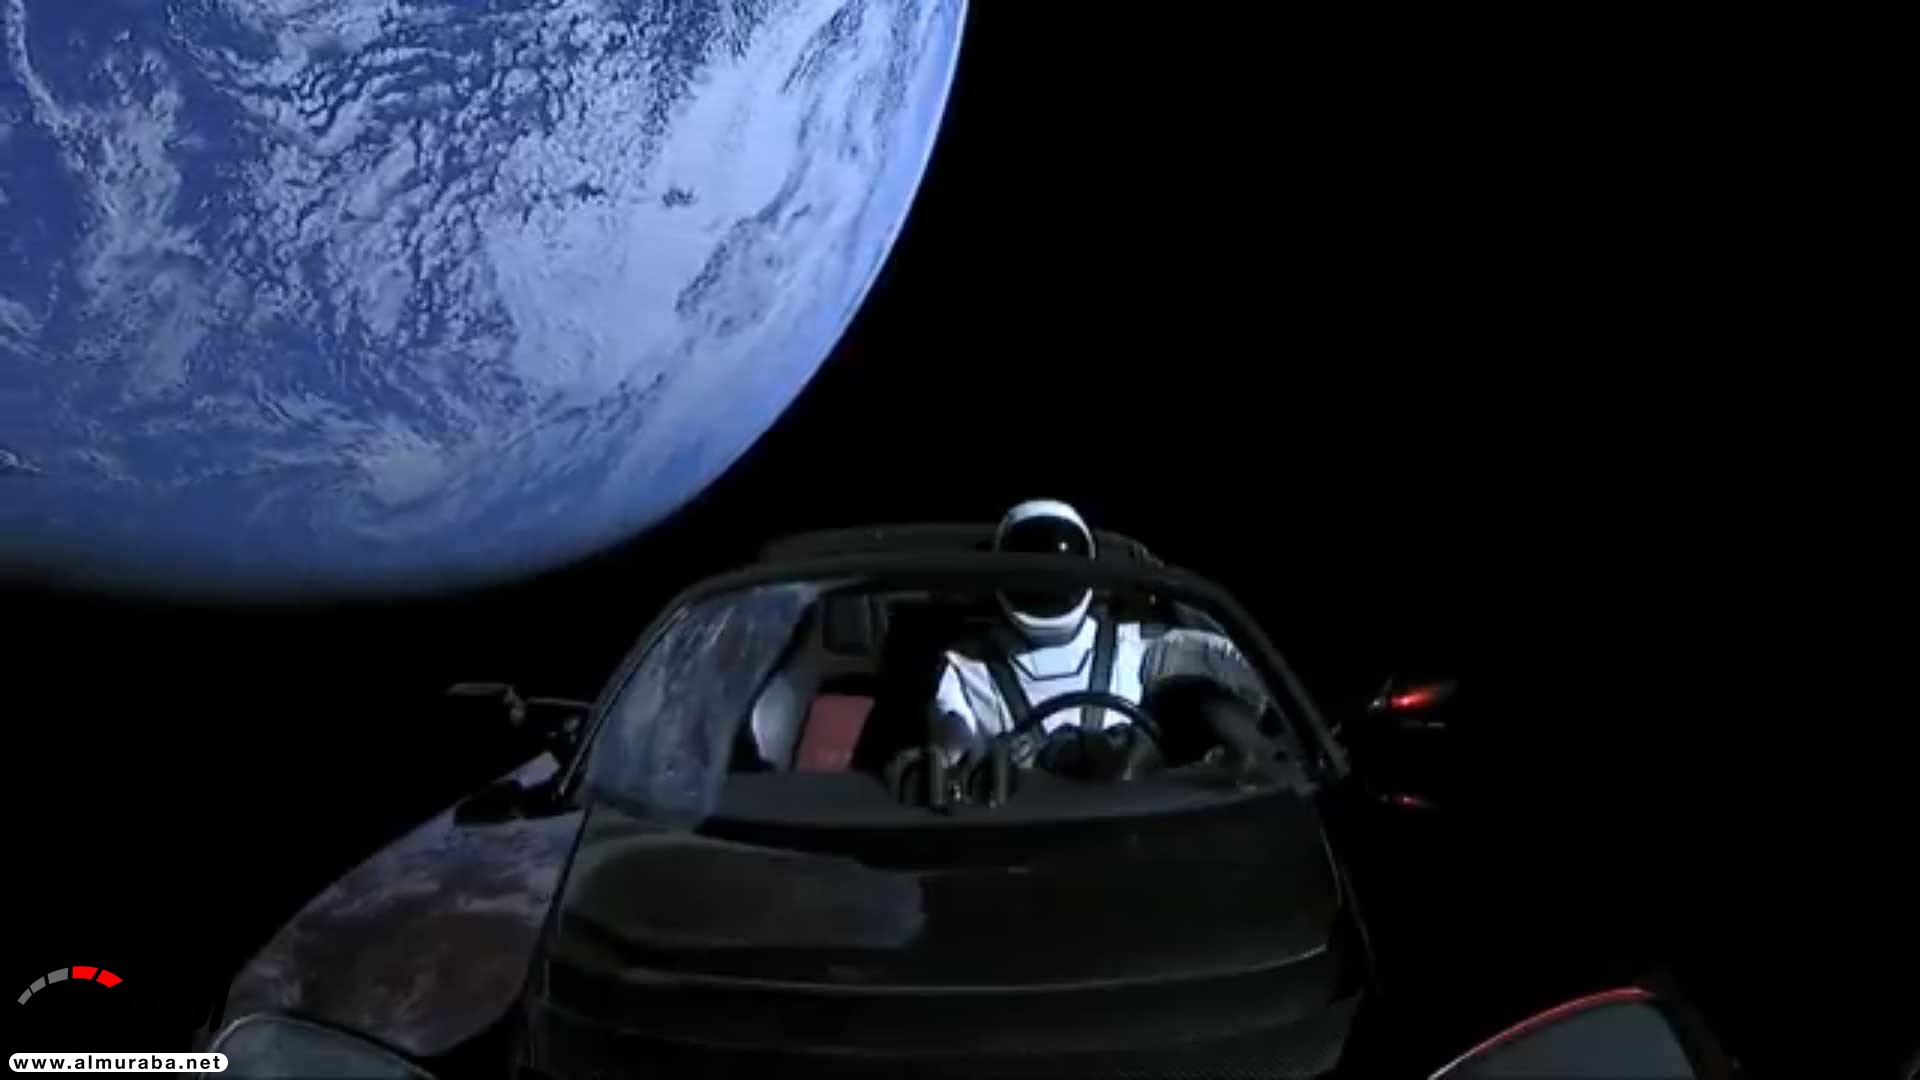 "بالفيديو والصور" إيلون ماسك يطلق تيسلا رودستر إلى المريخ في أقوى صاروخ بالعالم 36